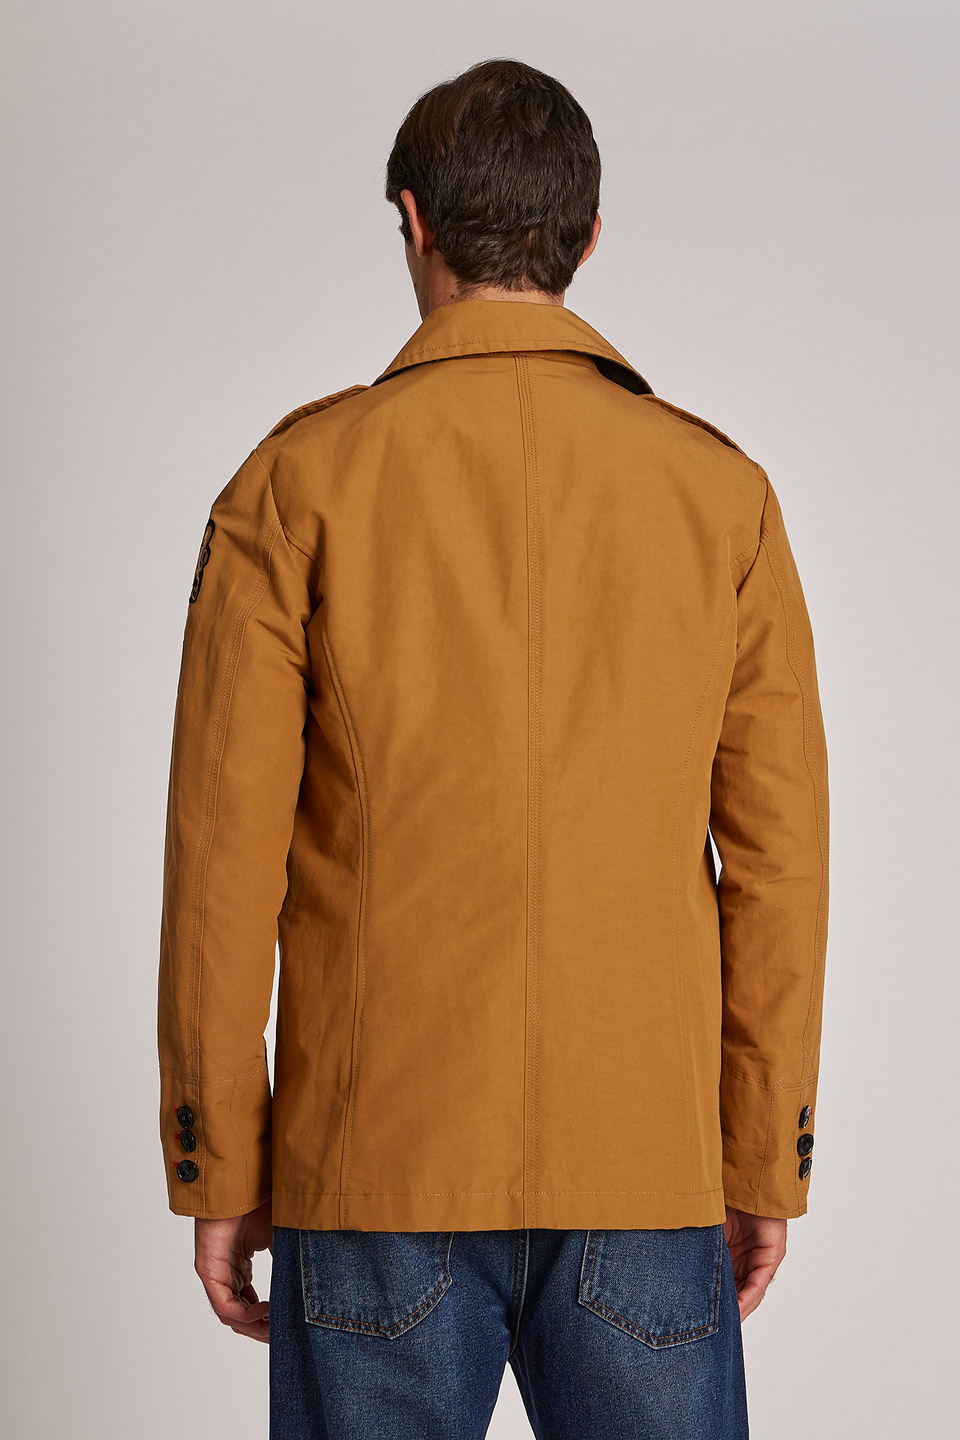 Men's long-sleeved regular-fit double-breasted jacket | La Martina - Official Online Shop